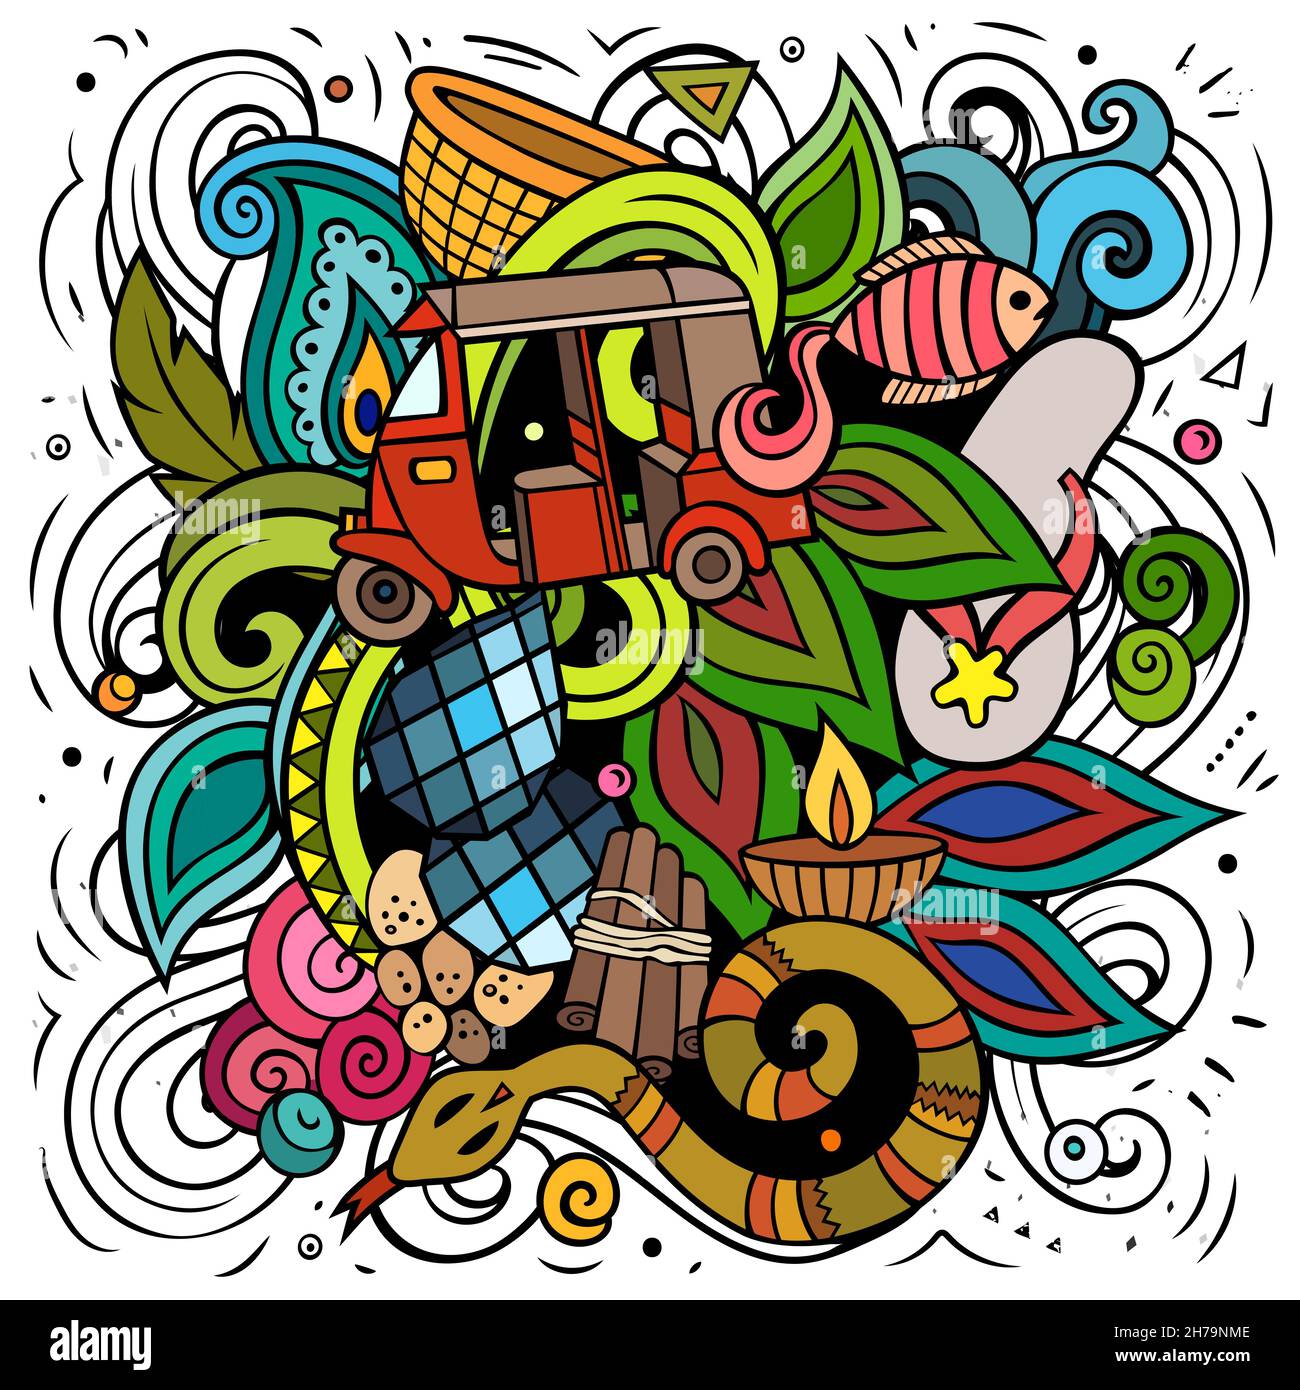 Sri Lanka Cartoon Vektor Doodle Illustration. Farbenfrohe, detailreiche Komposition mit vielen exotischen Inselobjekten und Symbolen. Stock Vektor